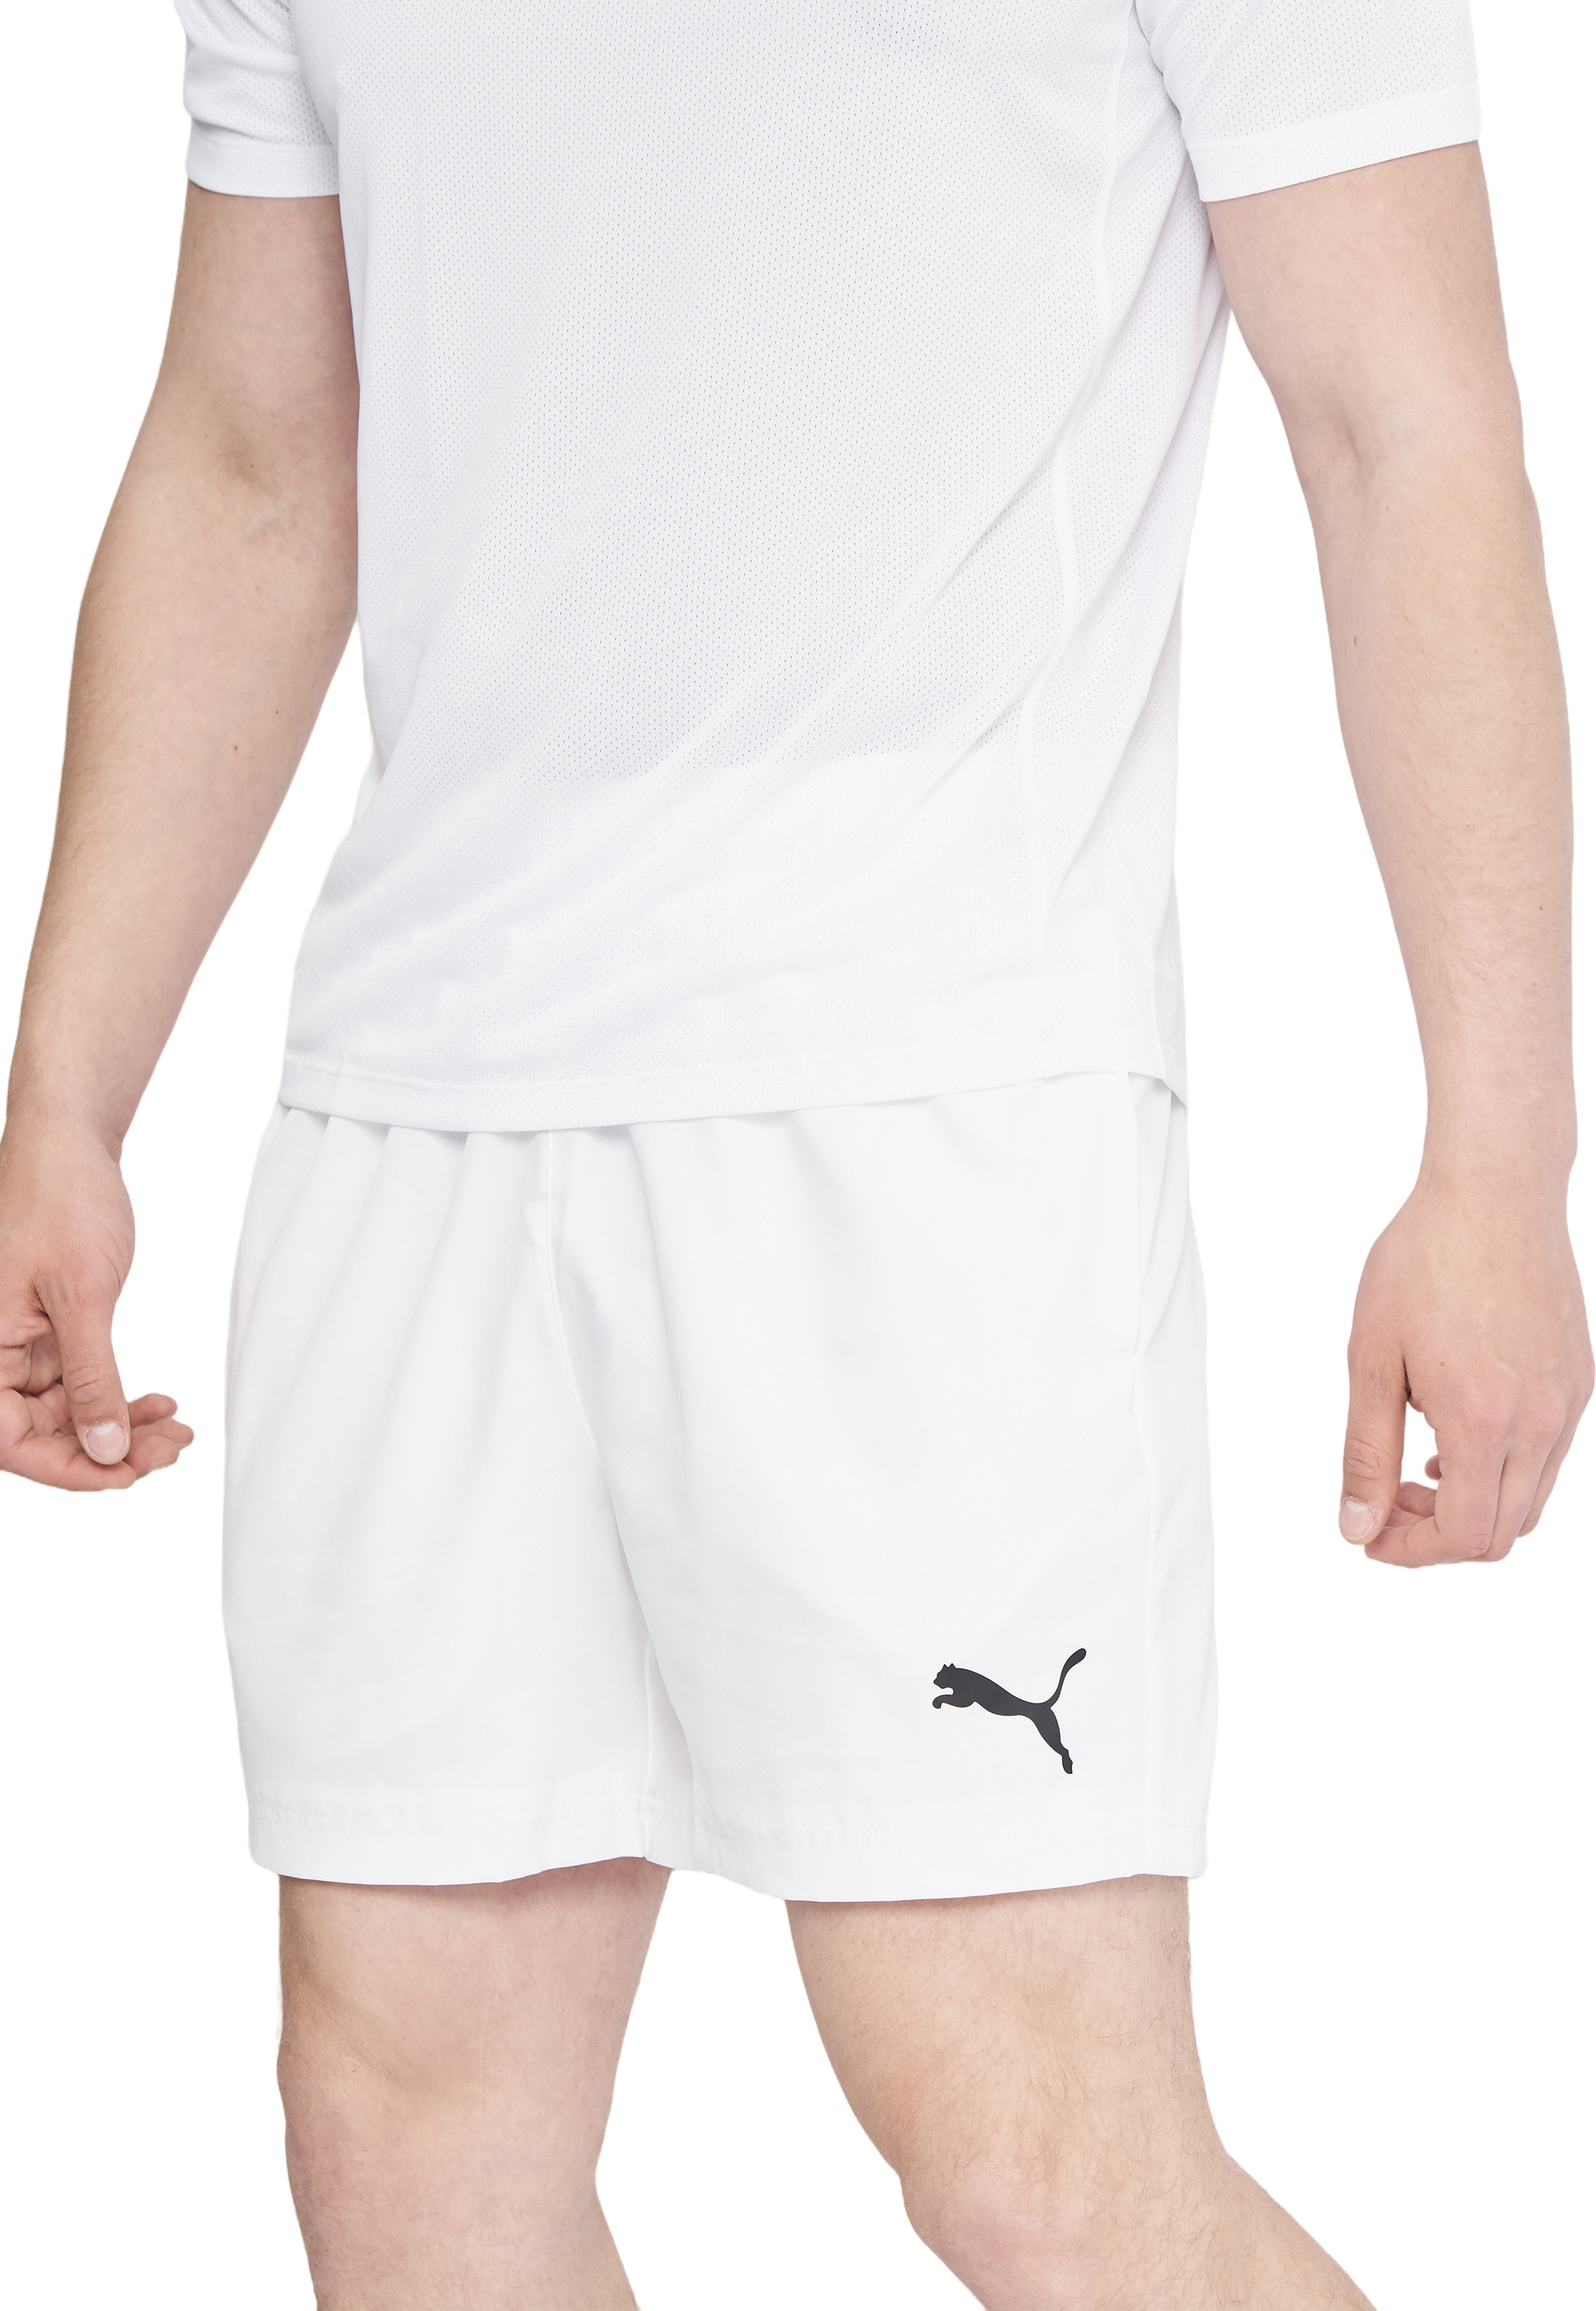 Спортивные шорты мужские Puma Active Woven Shorts 5